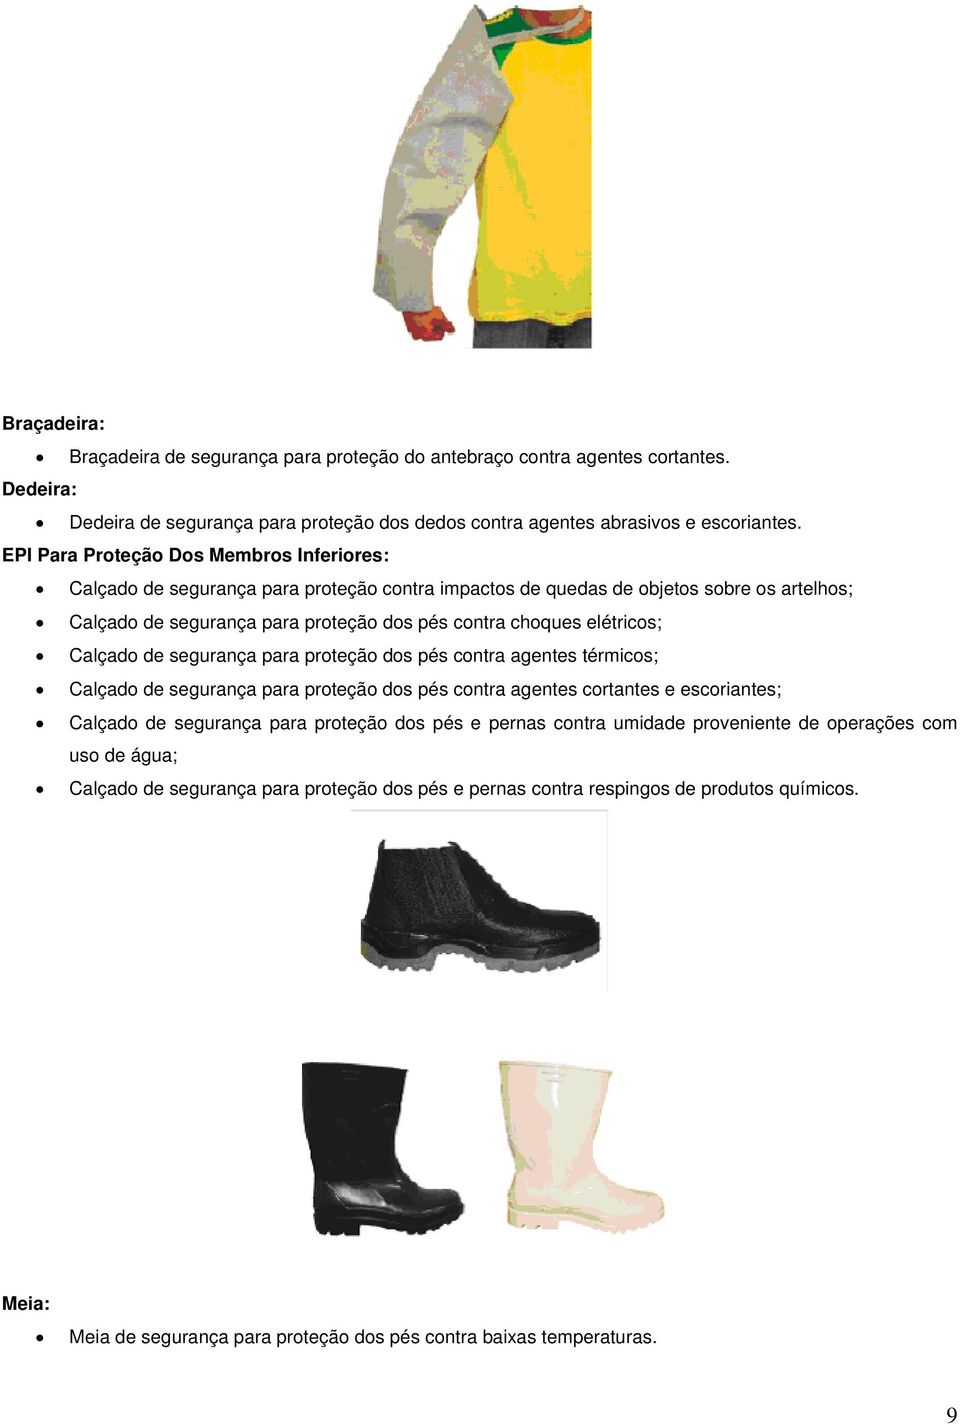 elétricos; Calçado de segurança para proteção dos pés contra agentes térmicos; Calçado de segurança para proteção dos pés contra agentes cortantes e escoriantes; Calçado de segurança para proteção